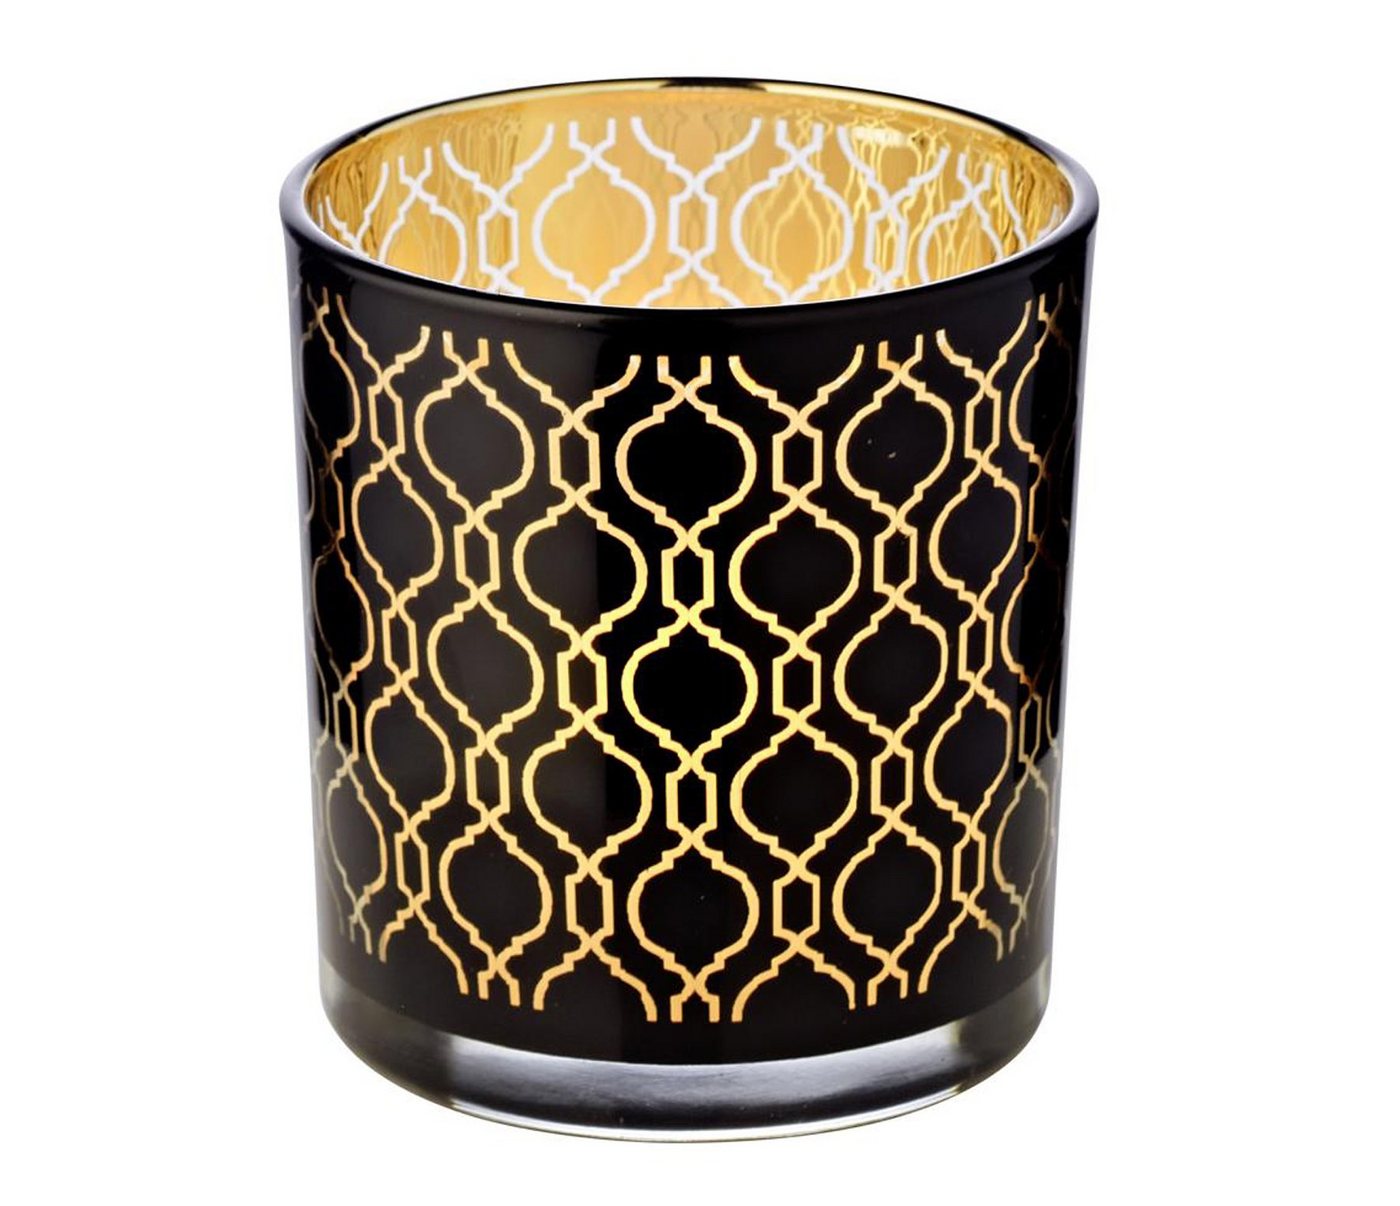 EDZARD Windlicht Raute, Kerzenglas mit Raute-Motiv in Gold-Optik, Teelichtglas für Teelichter, Höhe 8 cm, Ø 7 cm von EDZARD